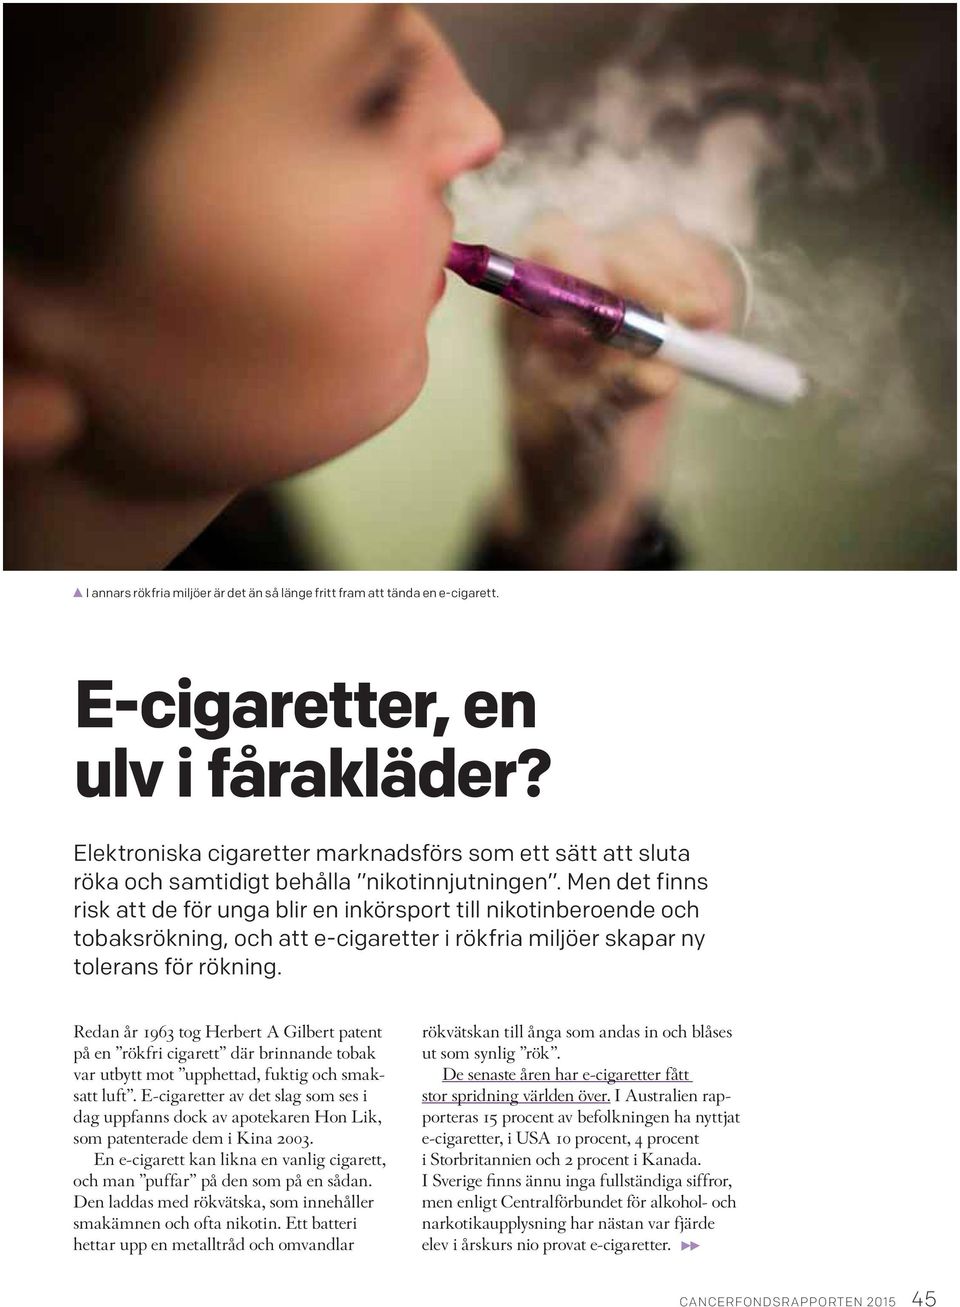 Men det finns risk att de för unga blir en inkörsport till nikotinberoende och tobaksrökning, och att e-cigaretter i rökfria miljöer skapar ny tolerans för rökning.